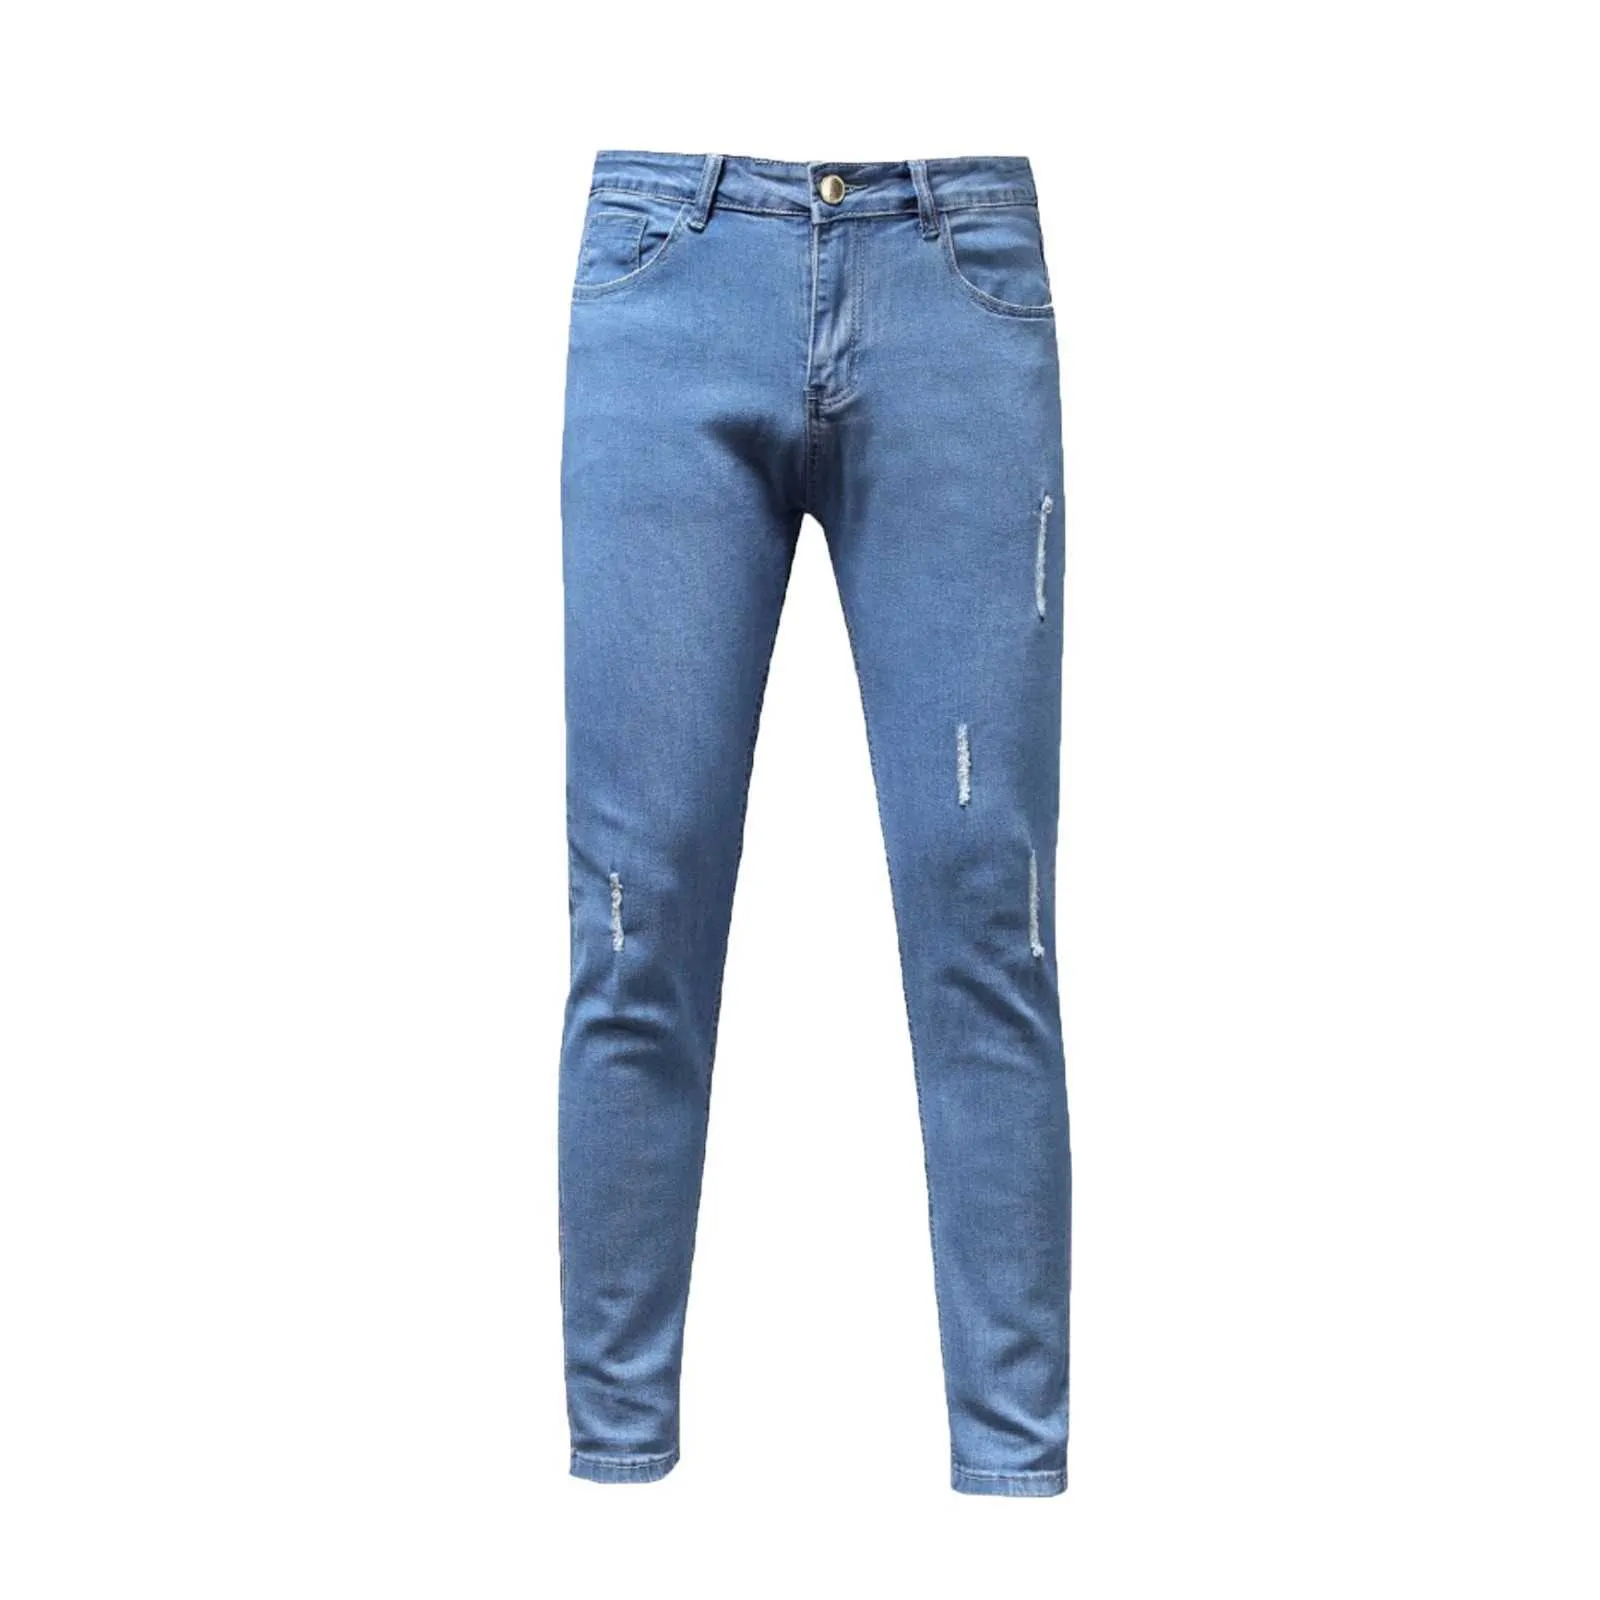 Moda homens zíper denim longo buraco buraco rasgado vintage cores sólidas hip hop estiramento alta cintura jeans skinny calças calças # 35 x0621